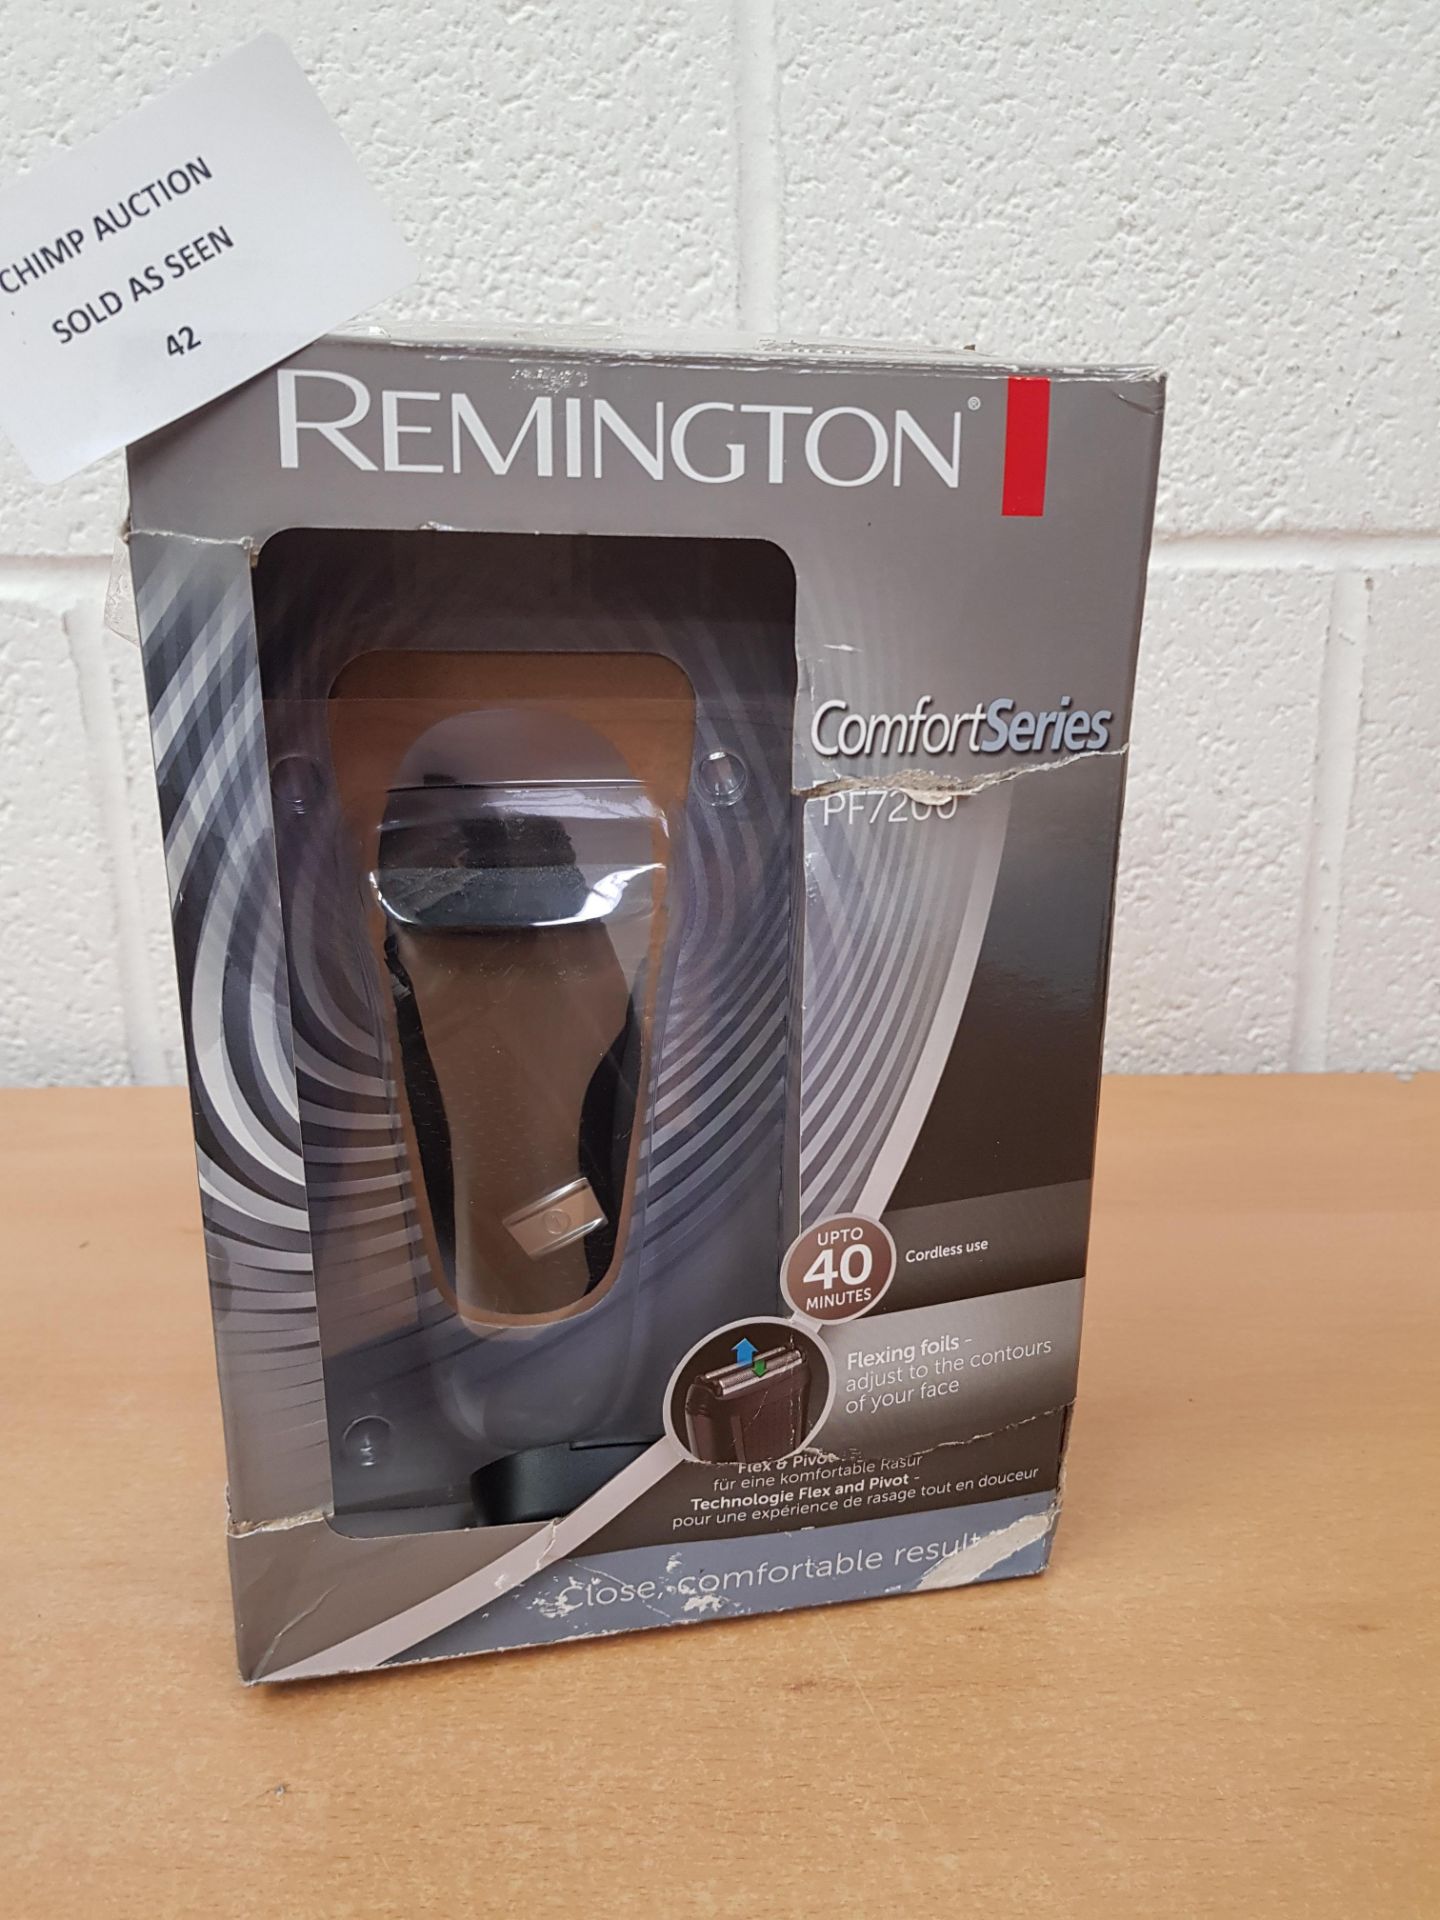 Remington PF7200 Comfort Series Foil Electric Shaver